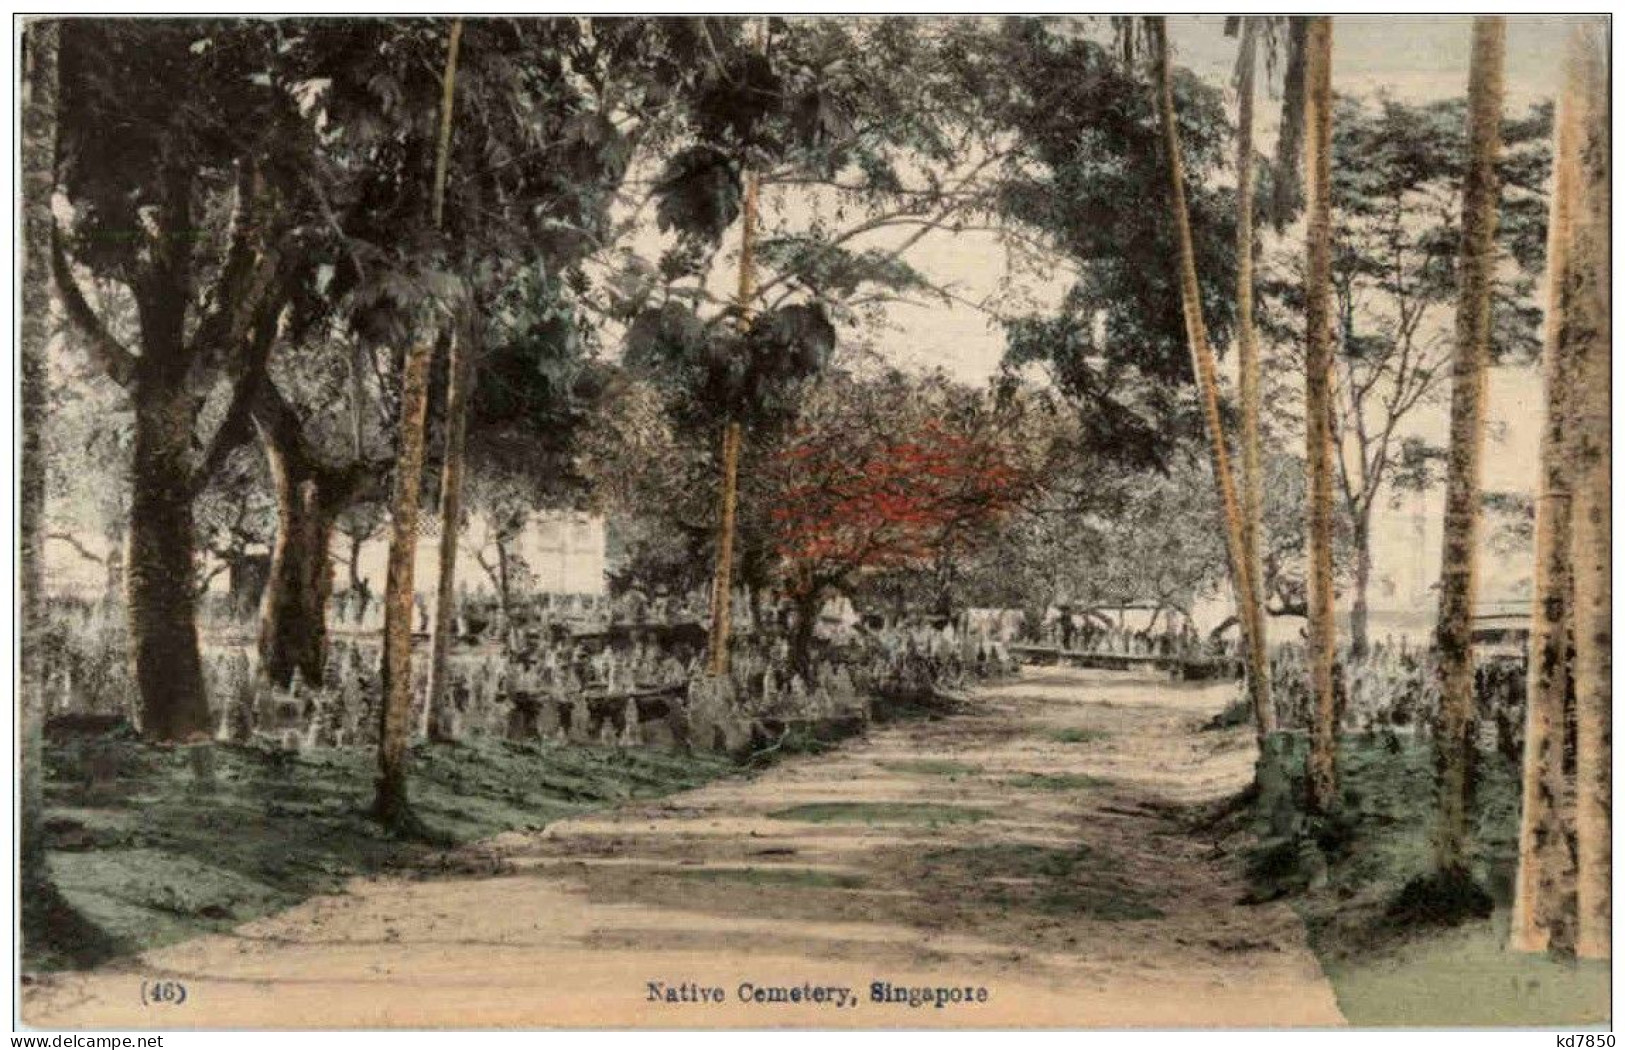 Singapore - Native Cemetery - Singapur